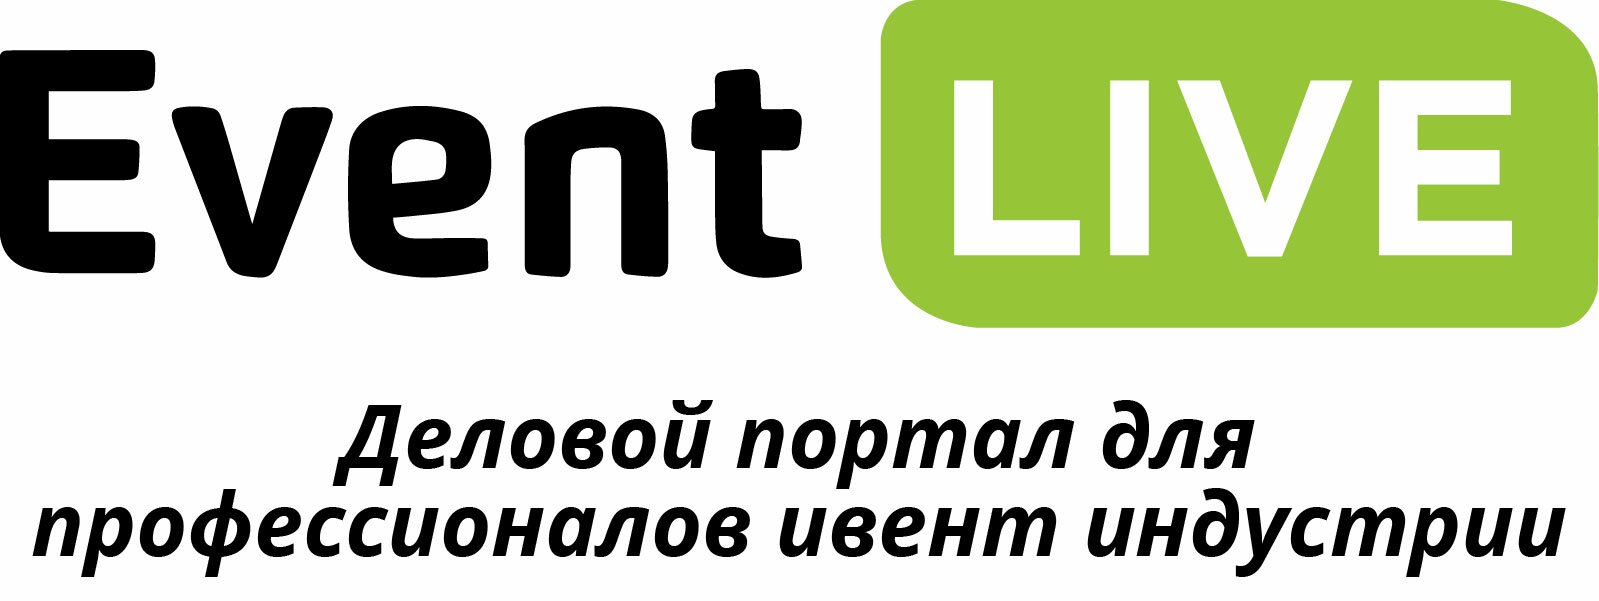 logo-el-01